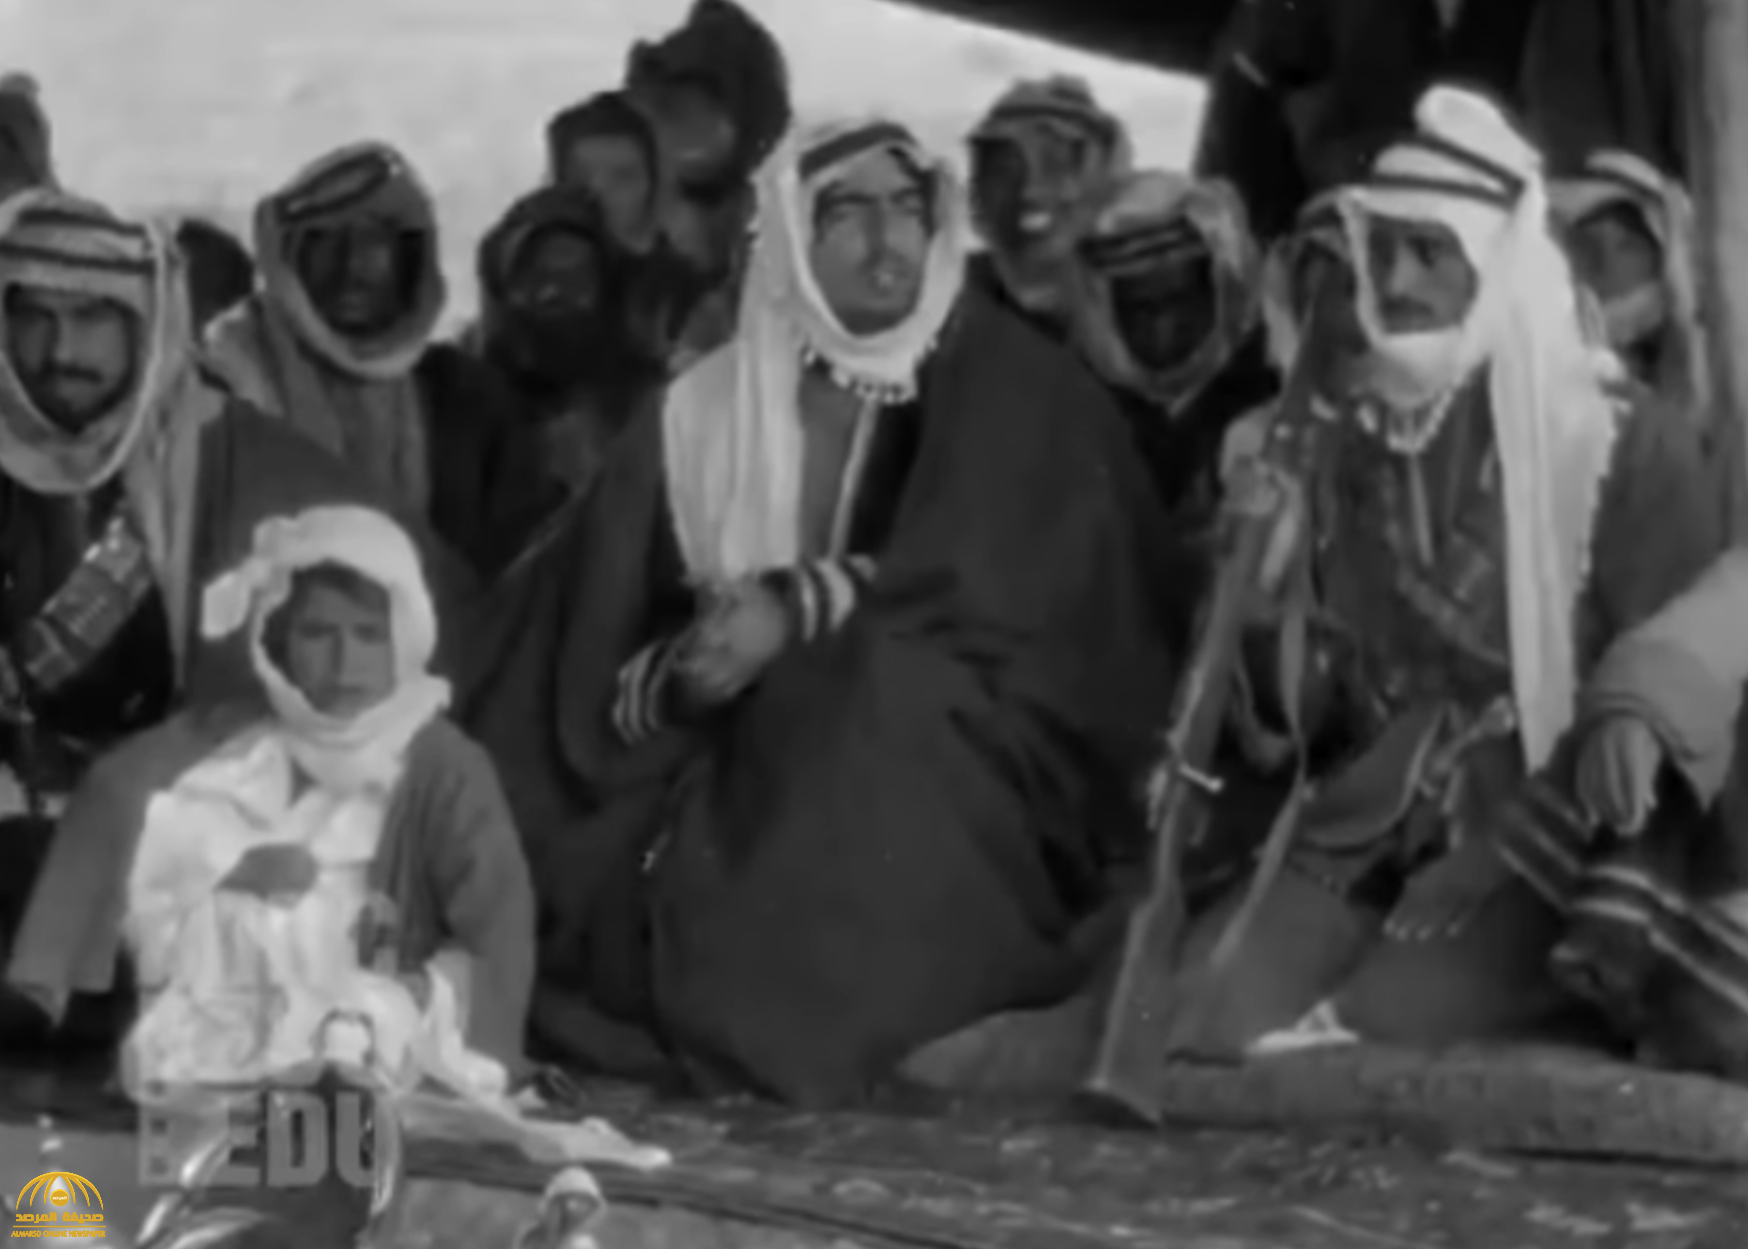 شاهد.. فيديو نادر ومثير يوثق جوانب من حياة أفراد "قبيلة" في شمال المملكة قبل 100 عام